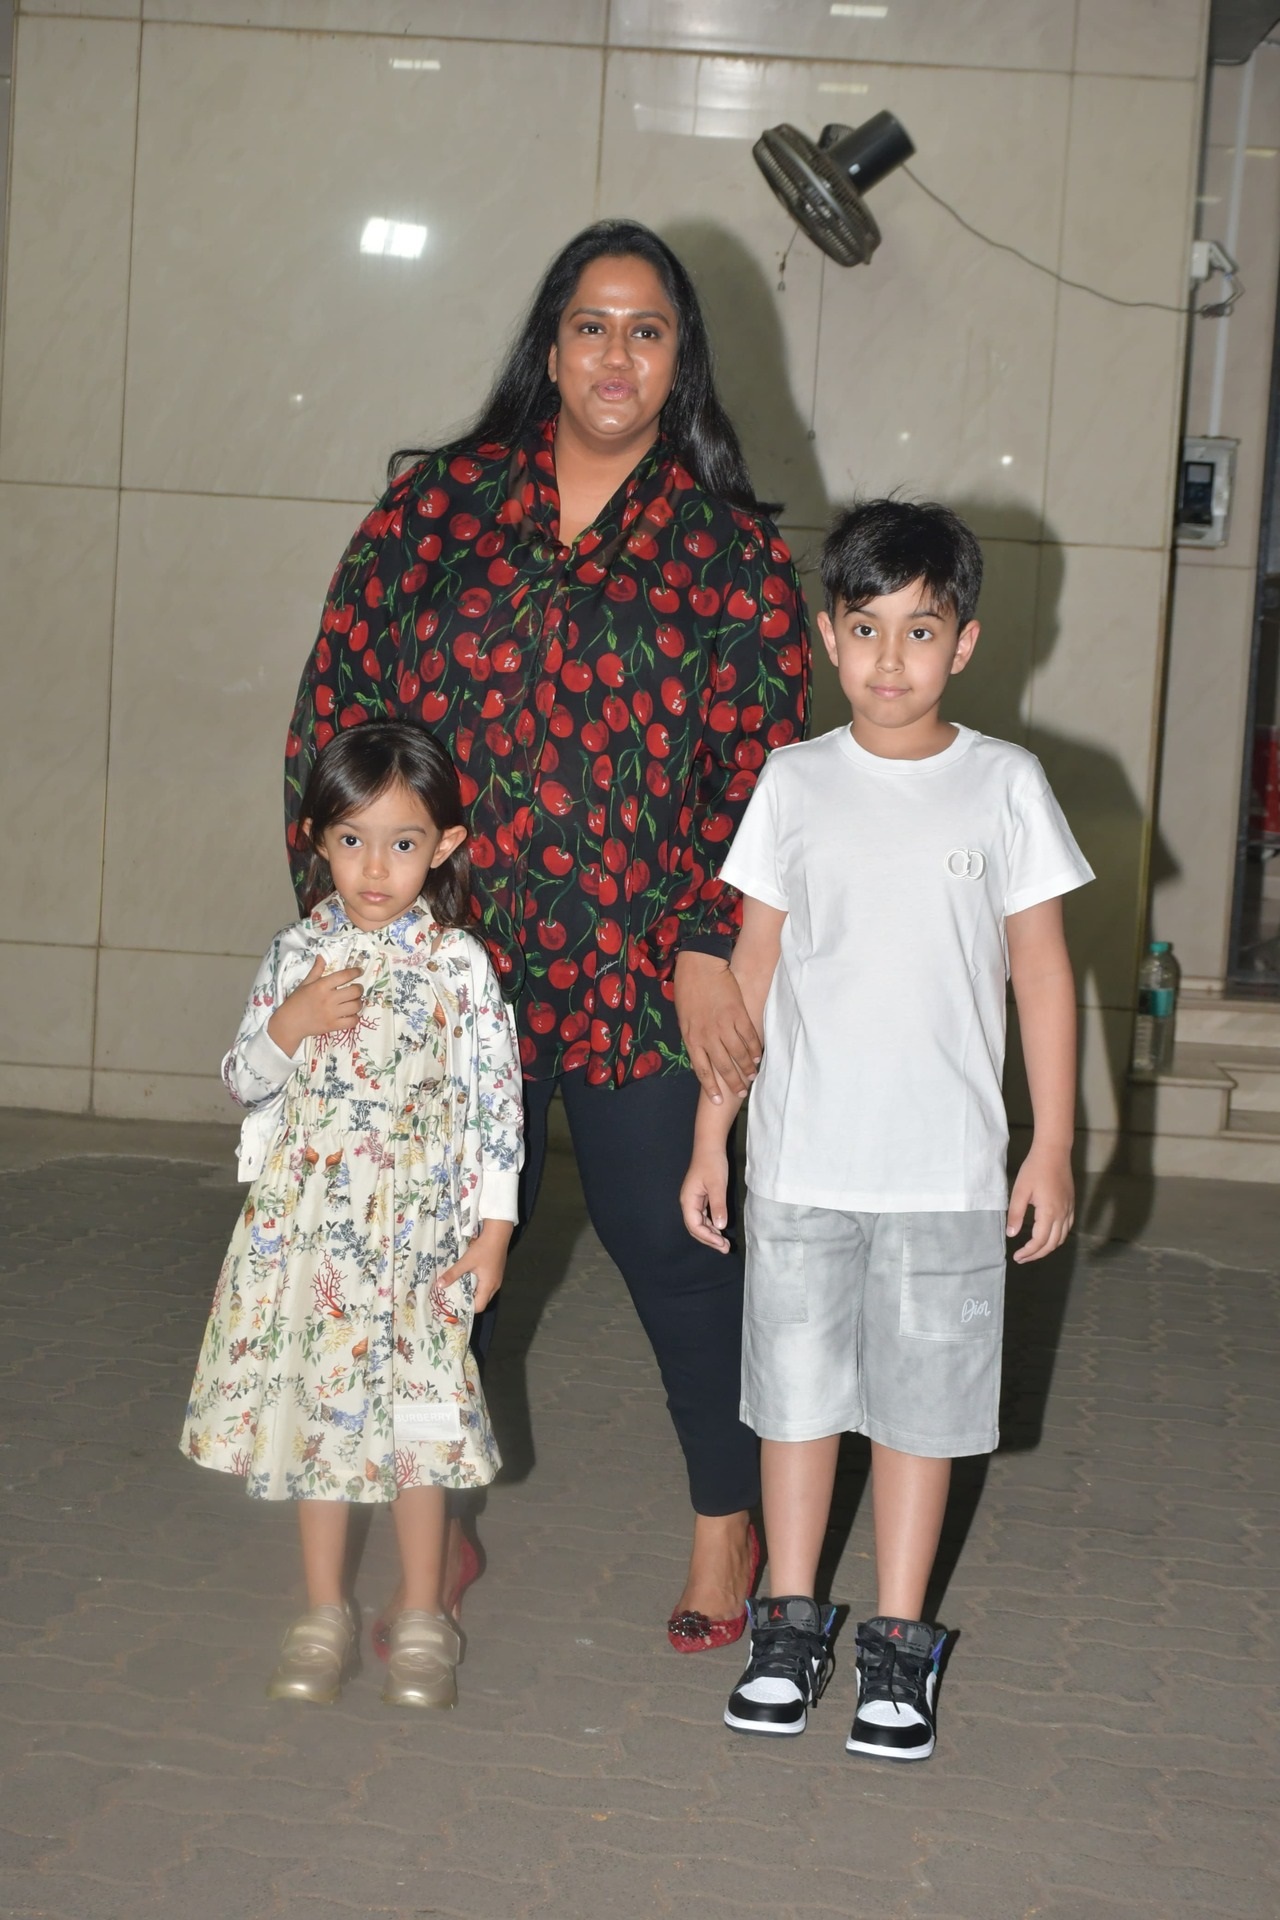 पार्टी में अर्पिता खान शर्मा अपने दोनों बच्चों के साथ दिखाई दी. 